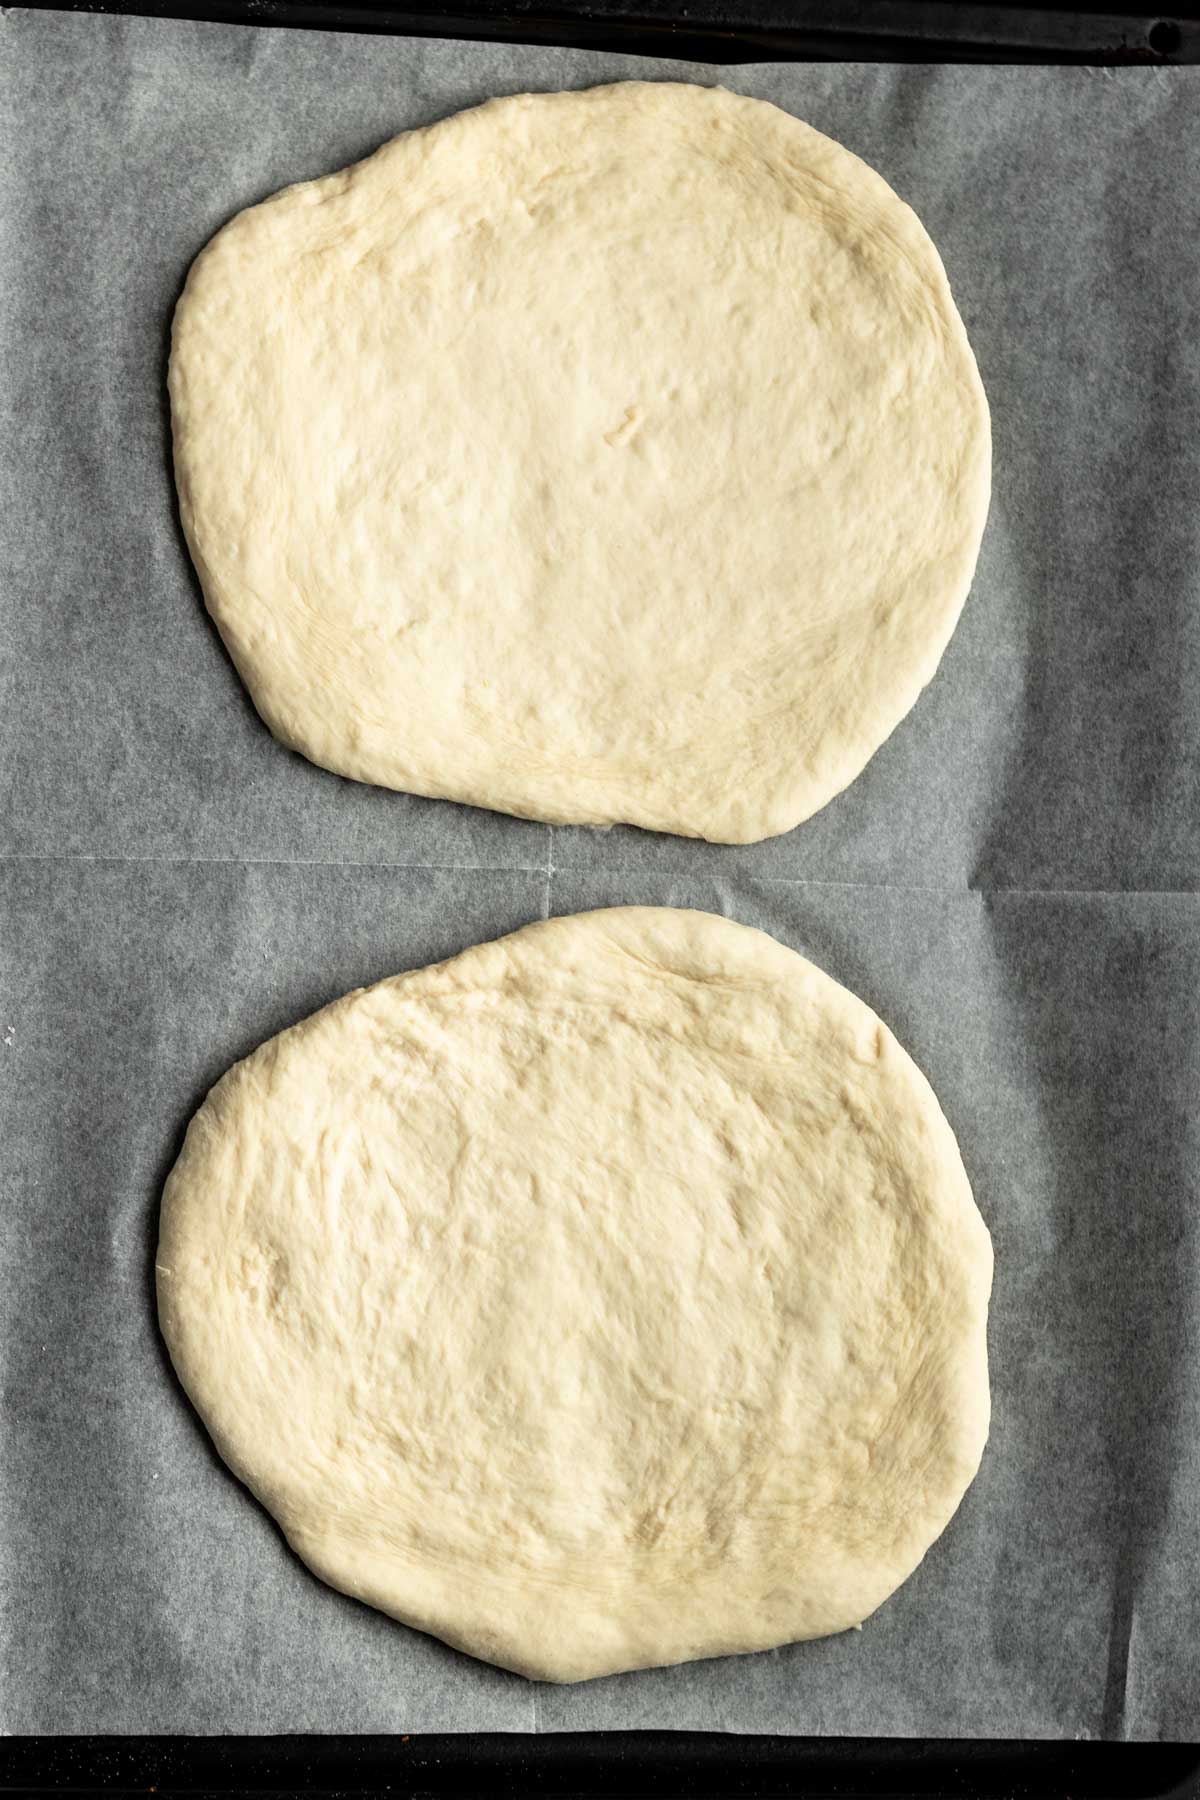 Bread process shots.